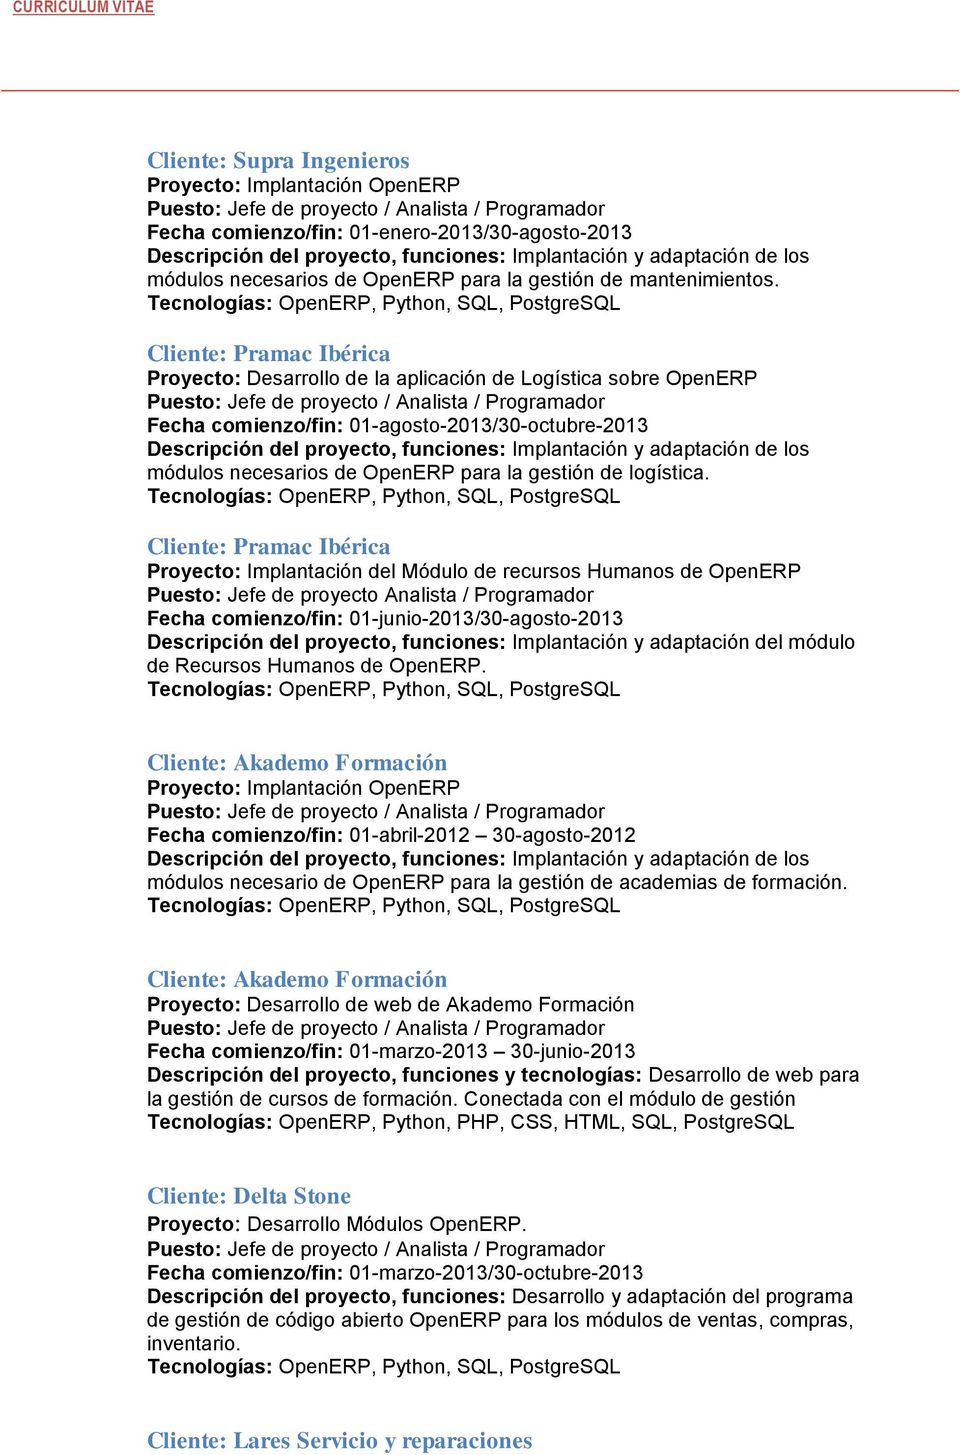 Cliente: Pramac Ibérica Proyecto: Implantación del Módulo de recursos Humanos de OpenERP Puesto: Jefe de proyecto Analista / Programador Fecha comienzo/fin: 01-junio-2013/30-agosto-2013 Descripción